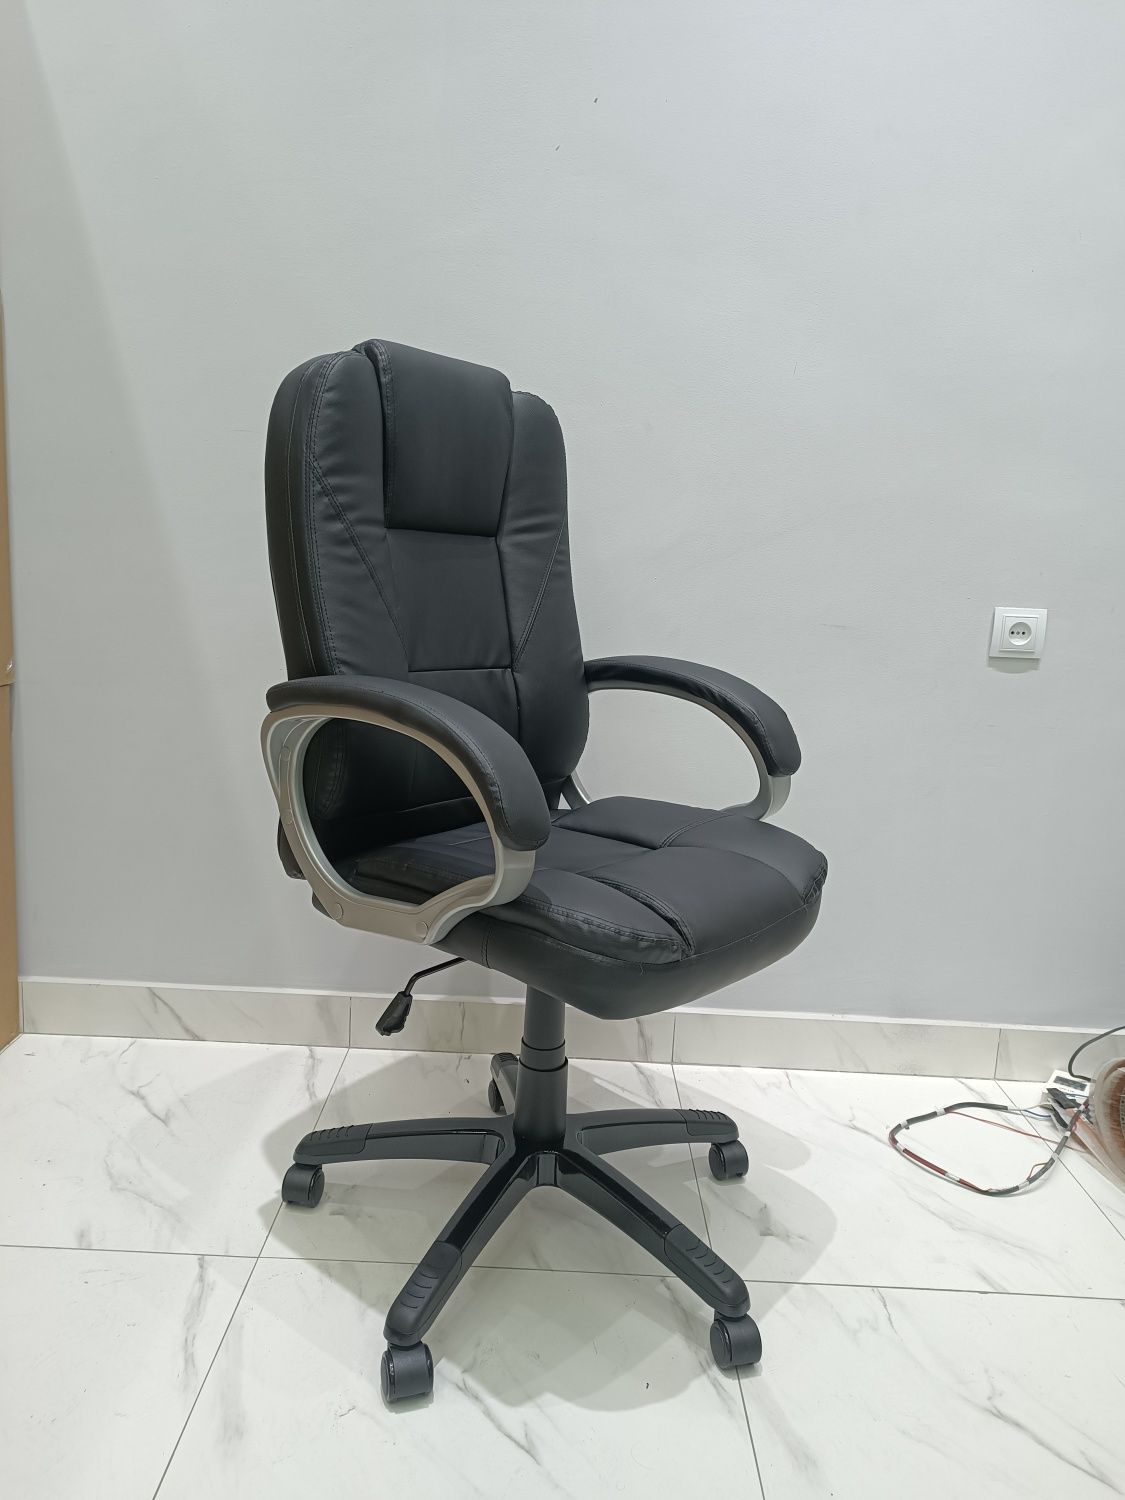 Офисная кресла DeLeon обеспечит вам комфортную работу длительное время